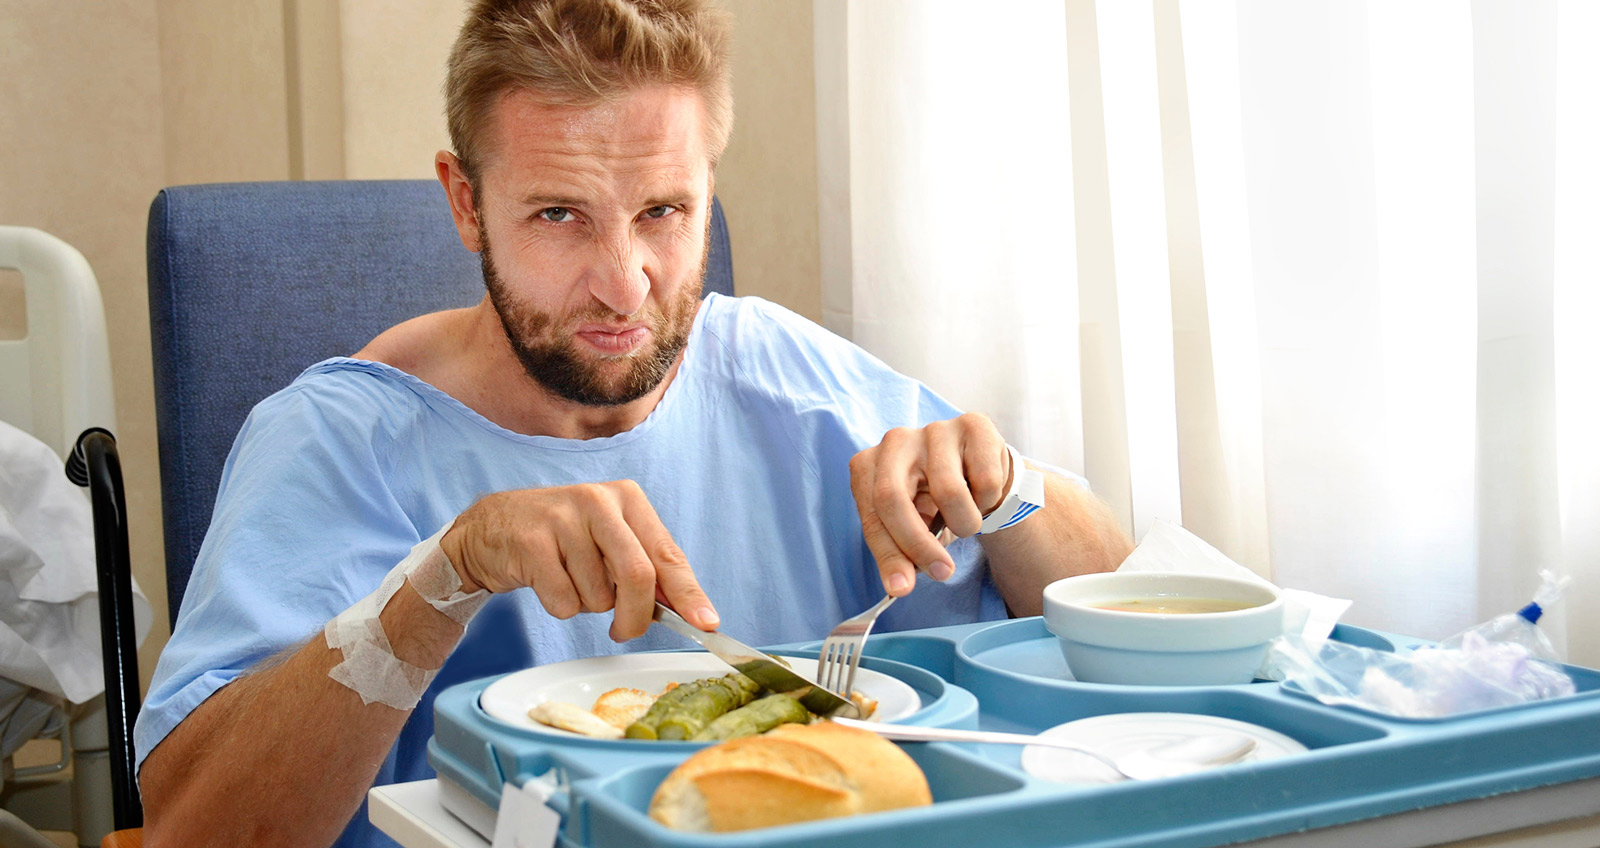 Ein Mann isst im Krankenhaus angewidert seine Mahlzeit